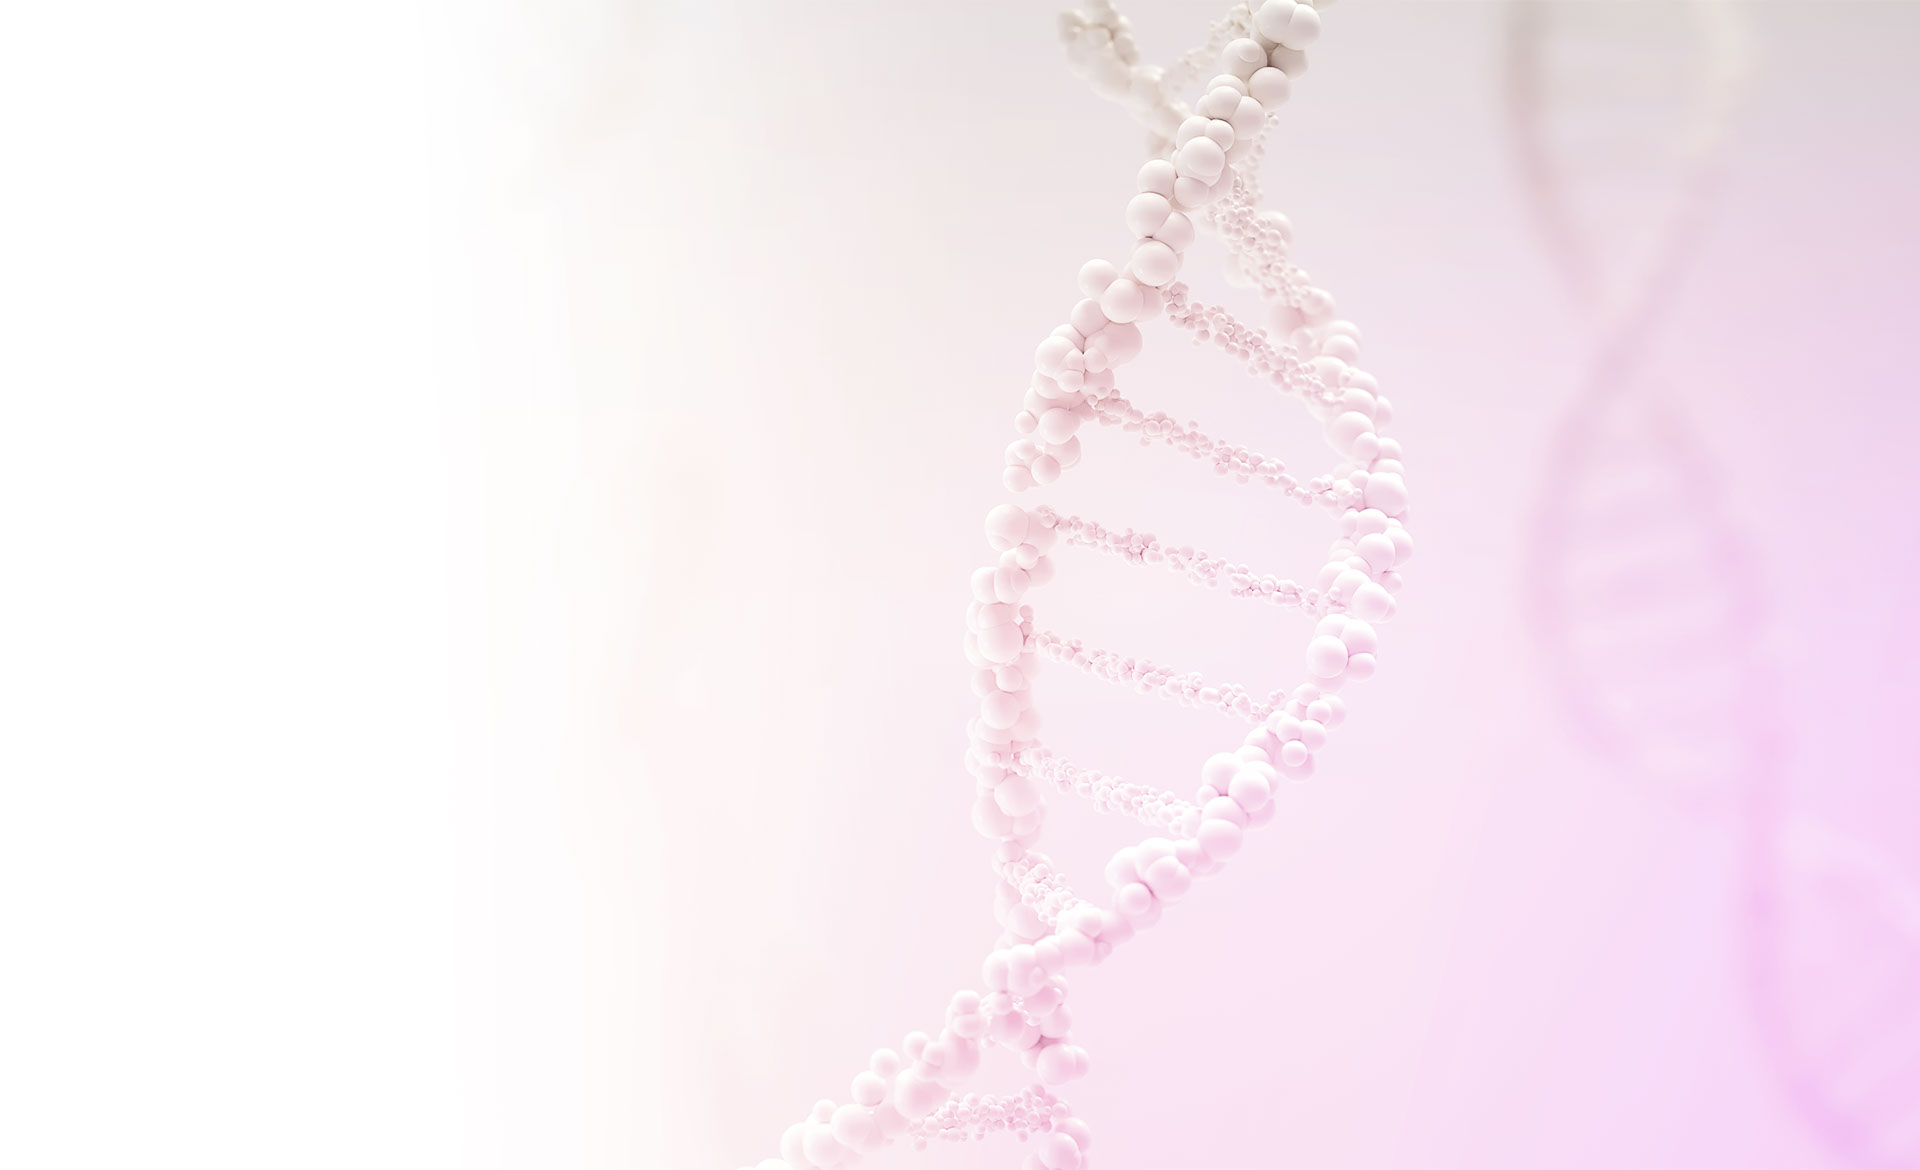 Teste genético para câncer de mama hereditário com painel de genes